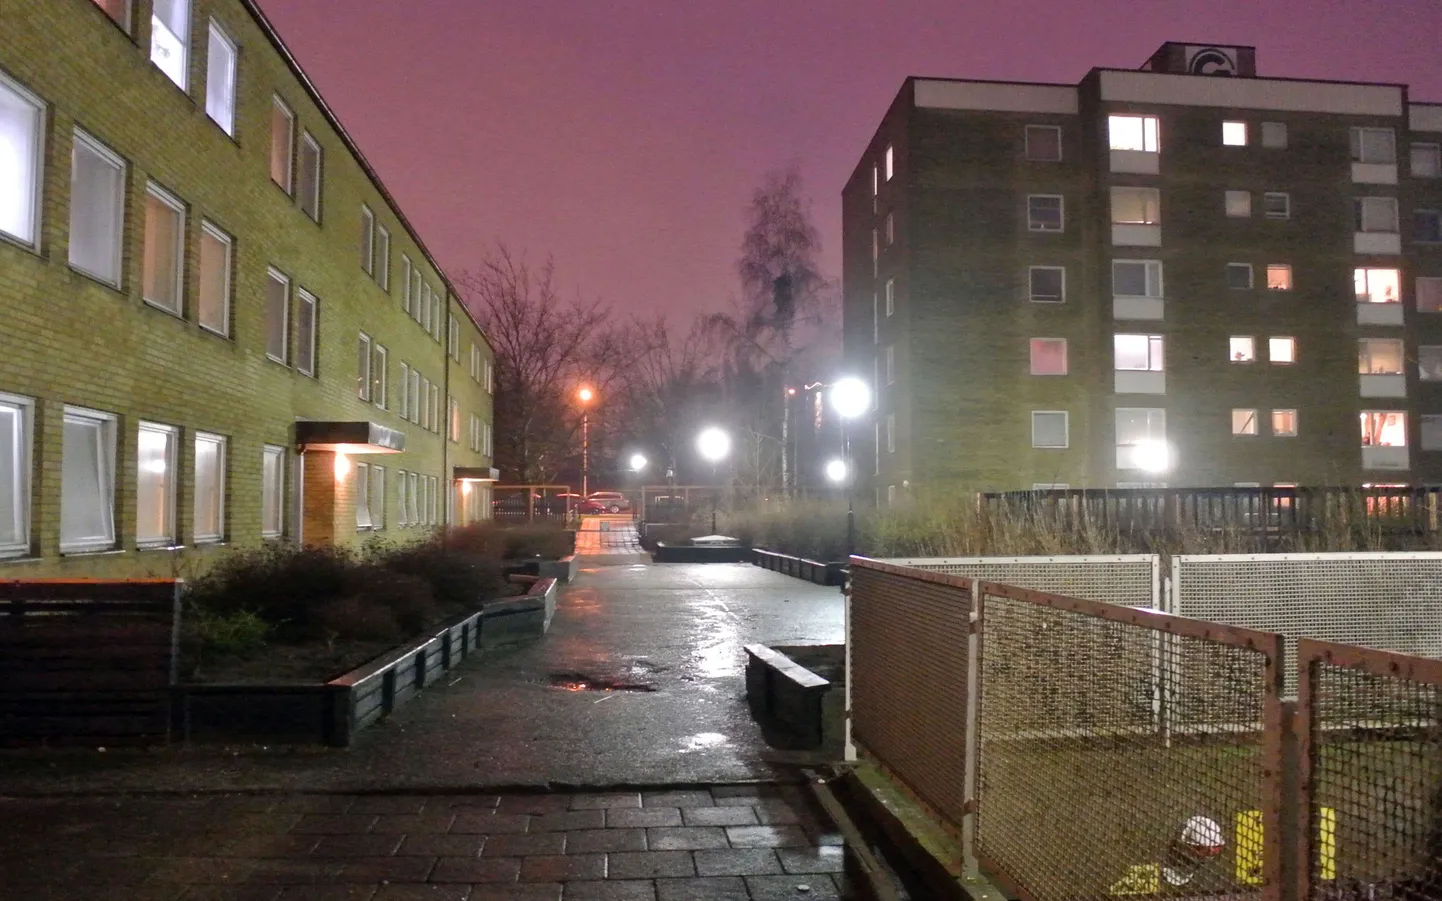 Ramelsi tänav Malmös, kus 1. jaanuari ööl lasti maha 15-aastane poiss.